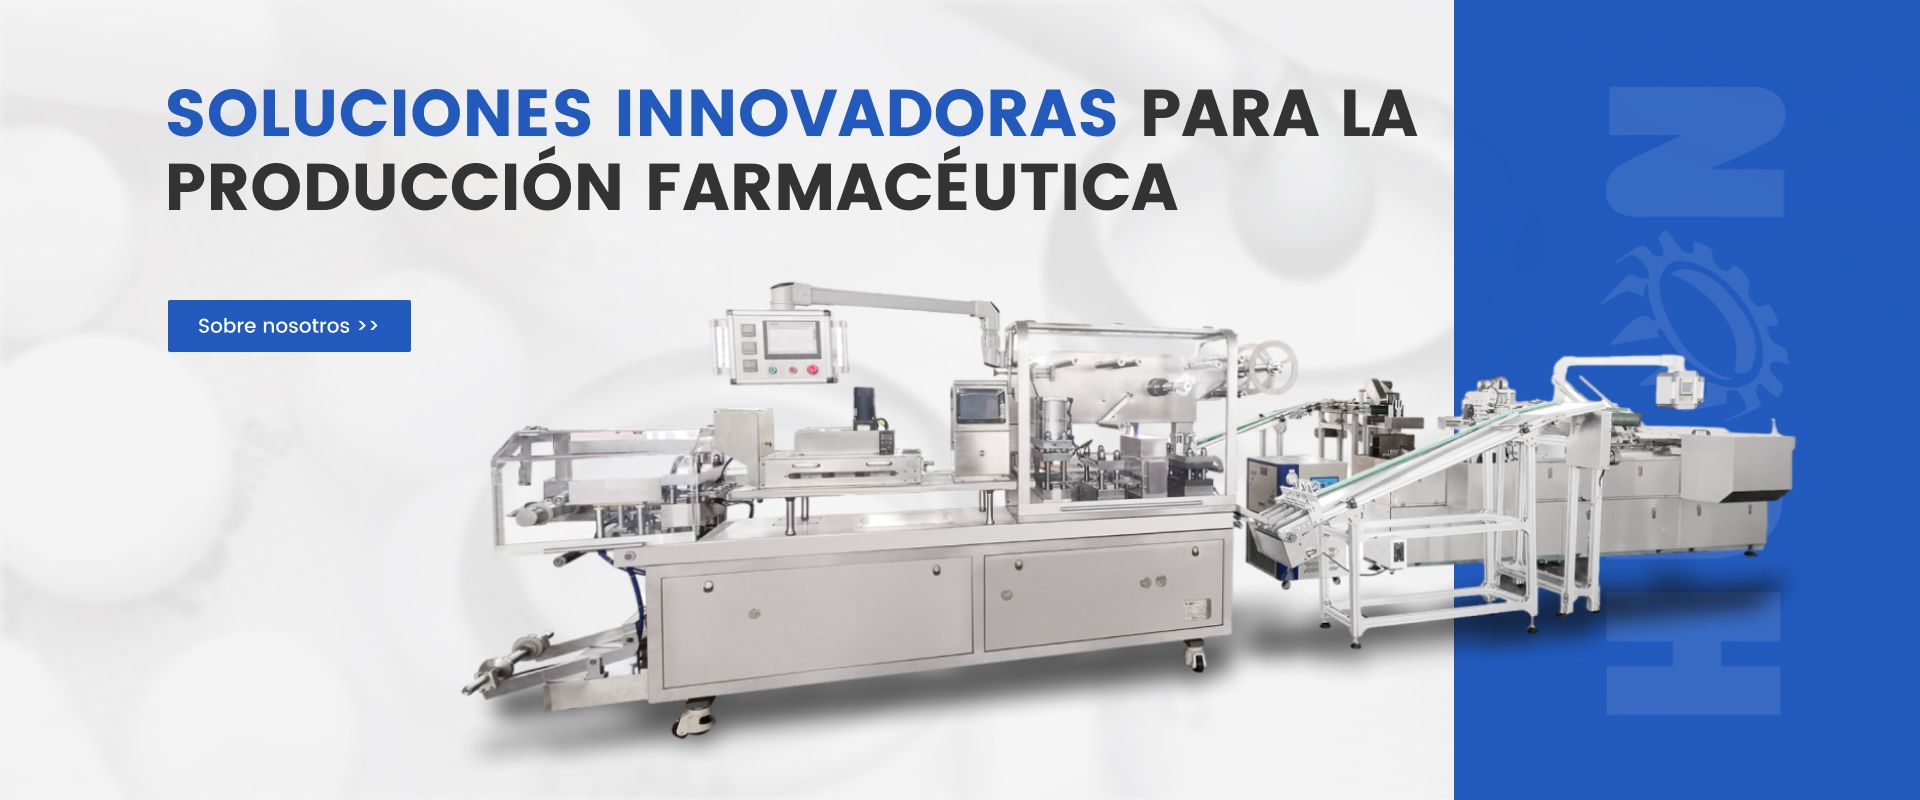 Soluciones innovadoras para la producción farmacéutica